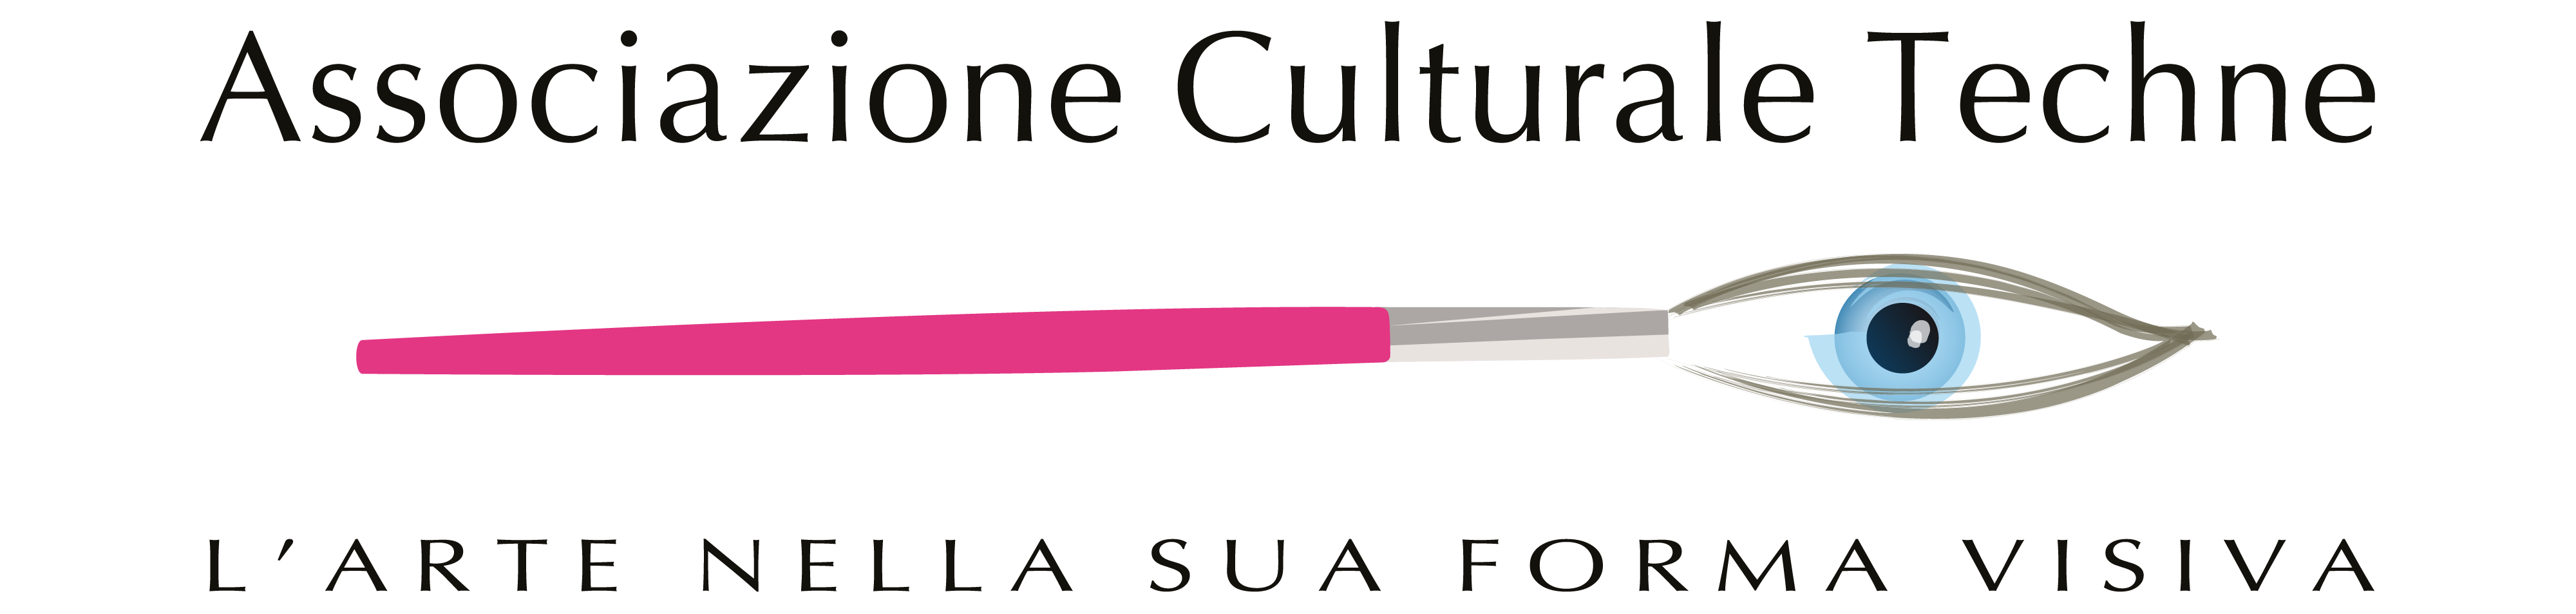 Associazioni Culturale Techne Logo